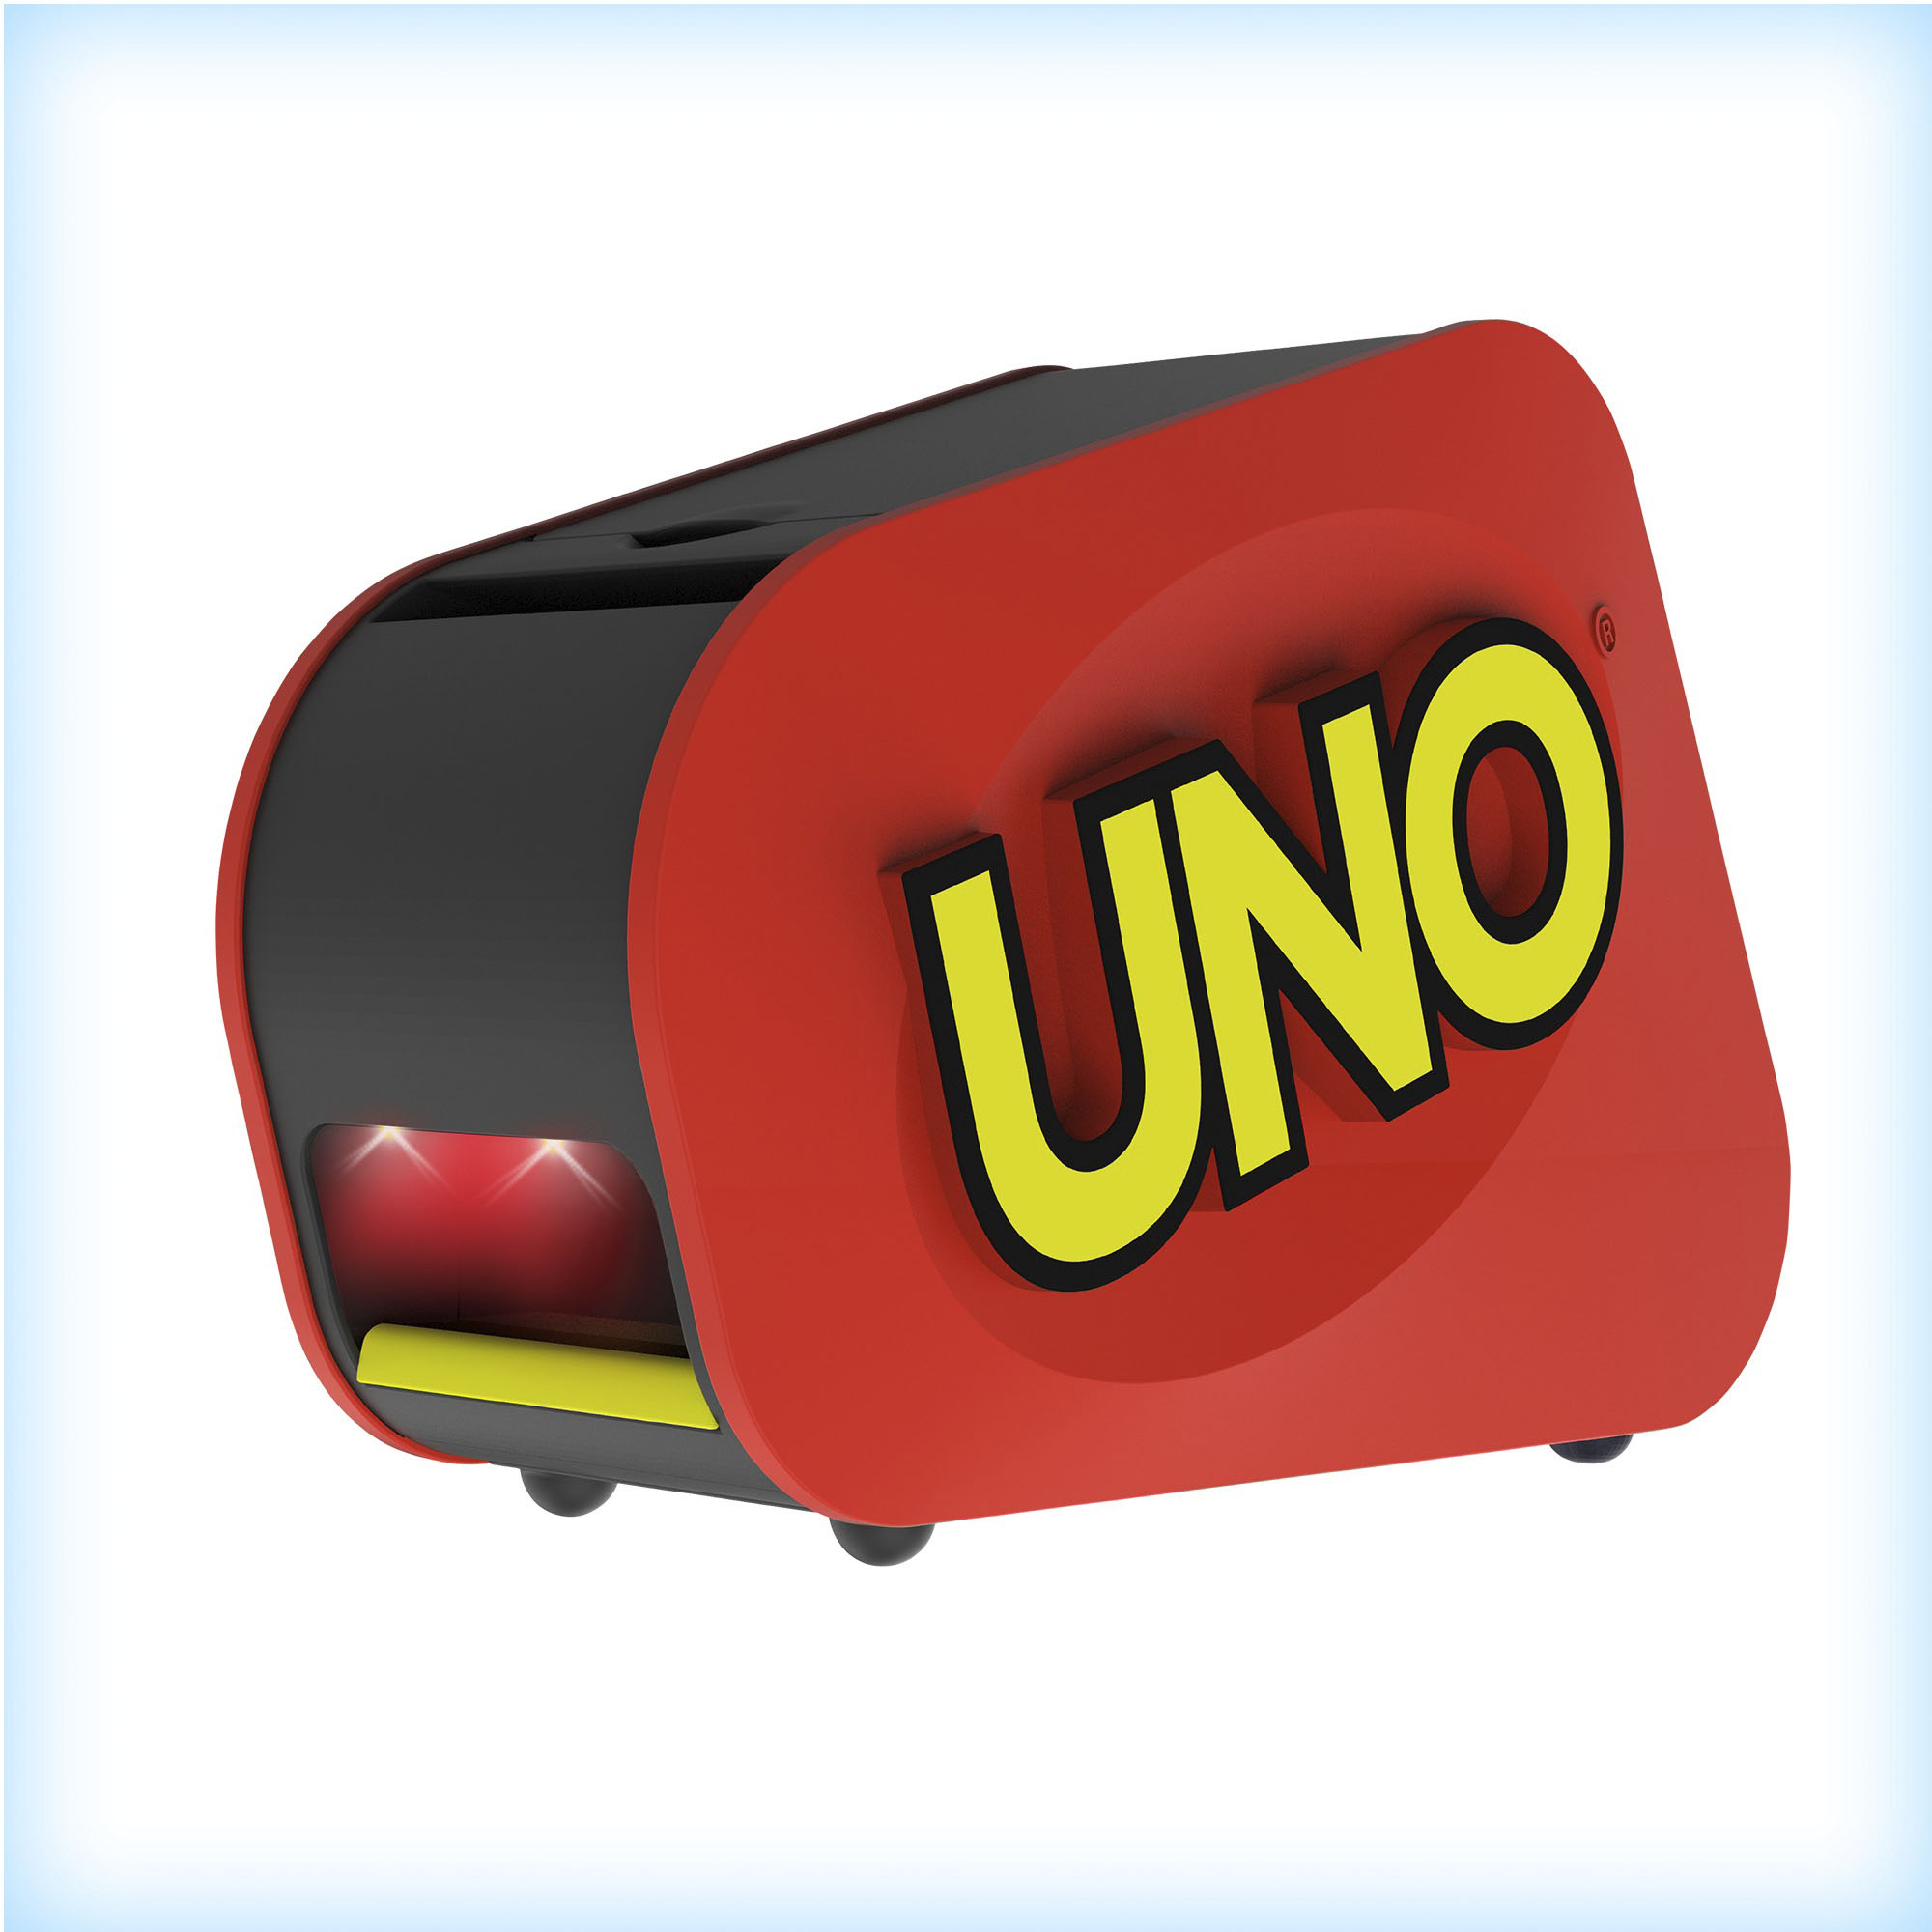 Buy Uno